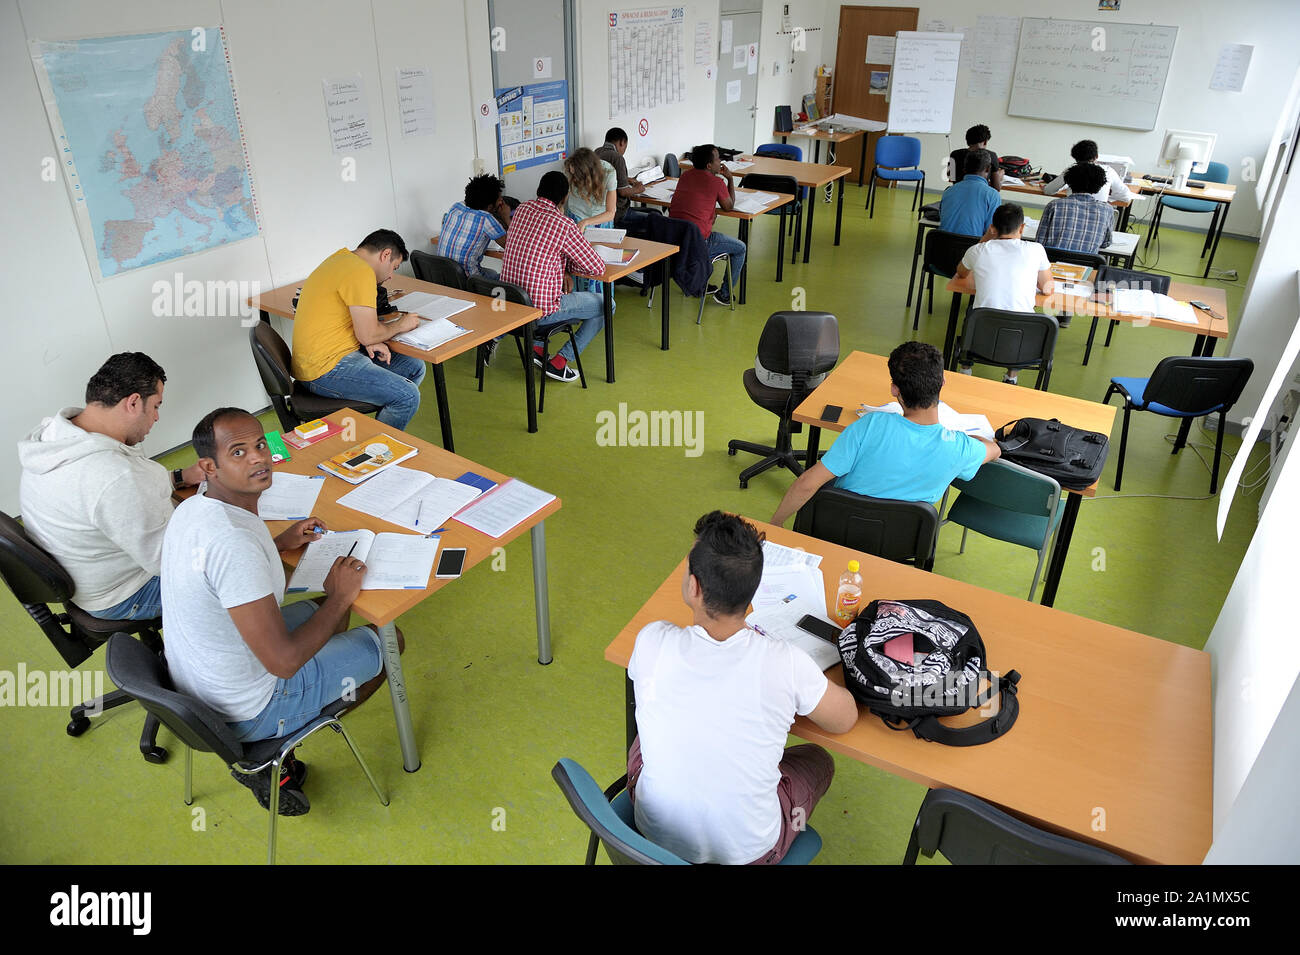 Los refugiados de guerra Aprende alemán en una clase de integración; en einer Integrationsklasse Kriegsflüchtlinge lernen Deutsch (Hessen, Alemania). Foto de stock